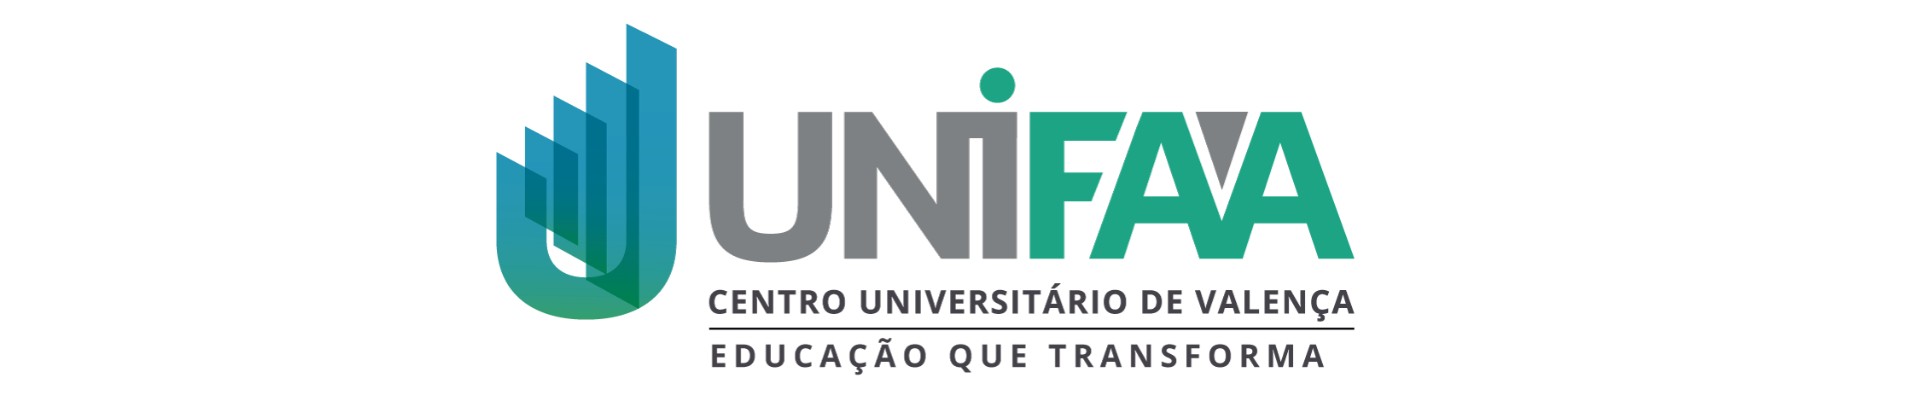 UNIFAA é reconhecido pelo MEC pela oferta dos melhores cursos do